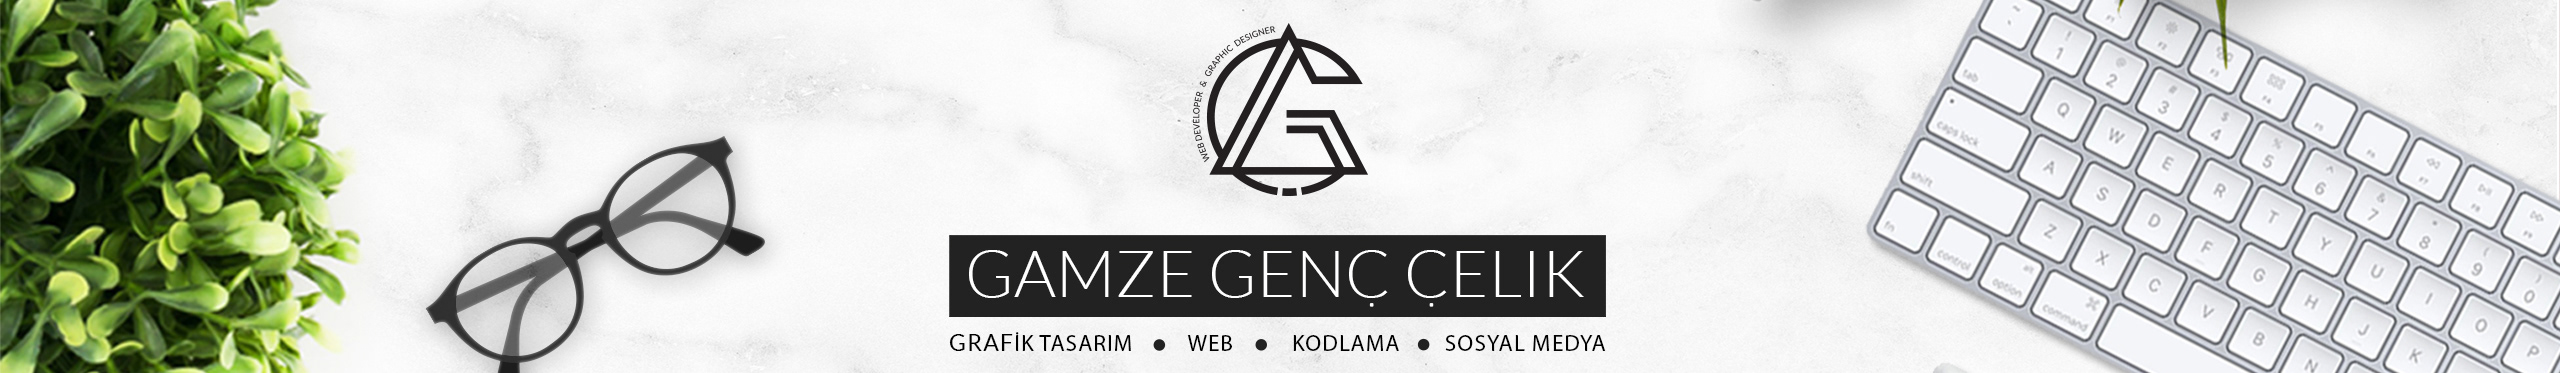 Gamze Genc Celik's profile banner